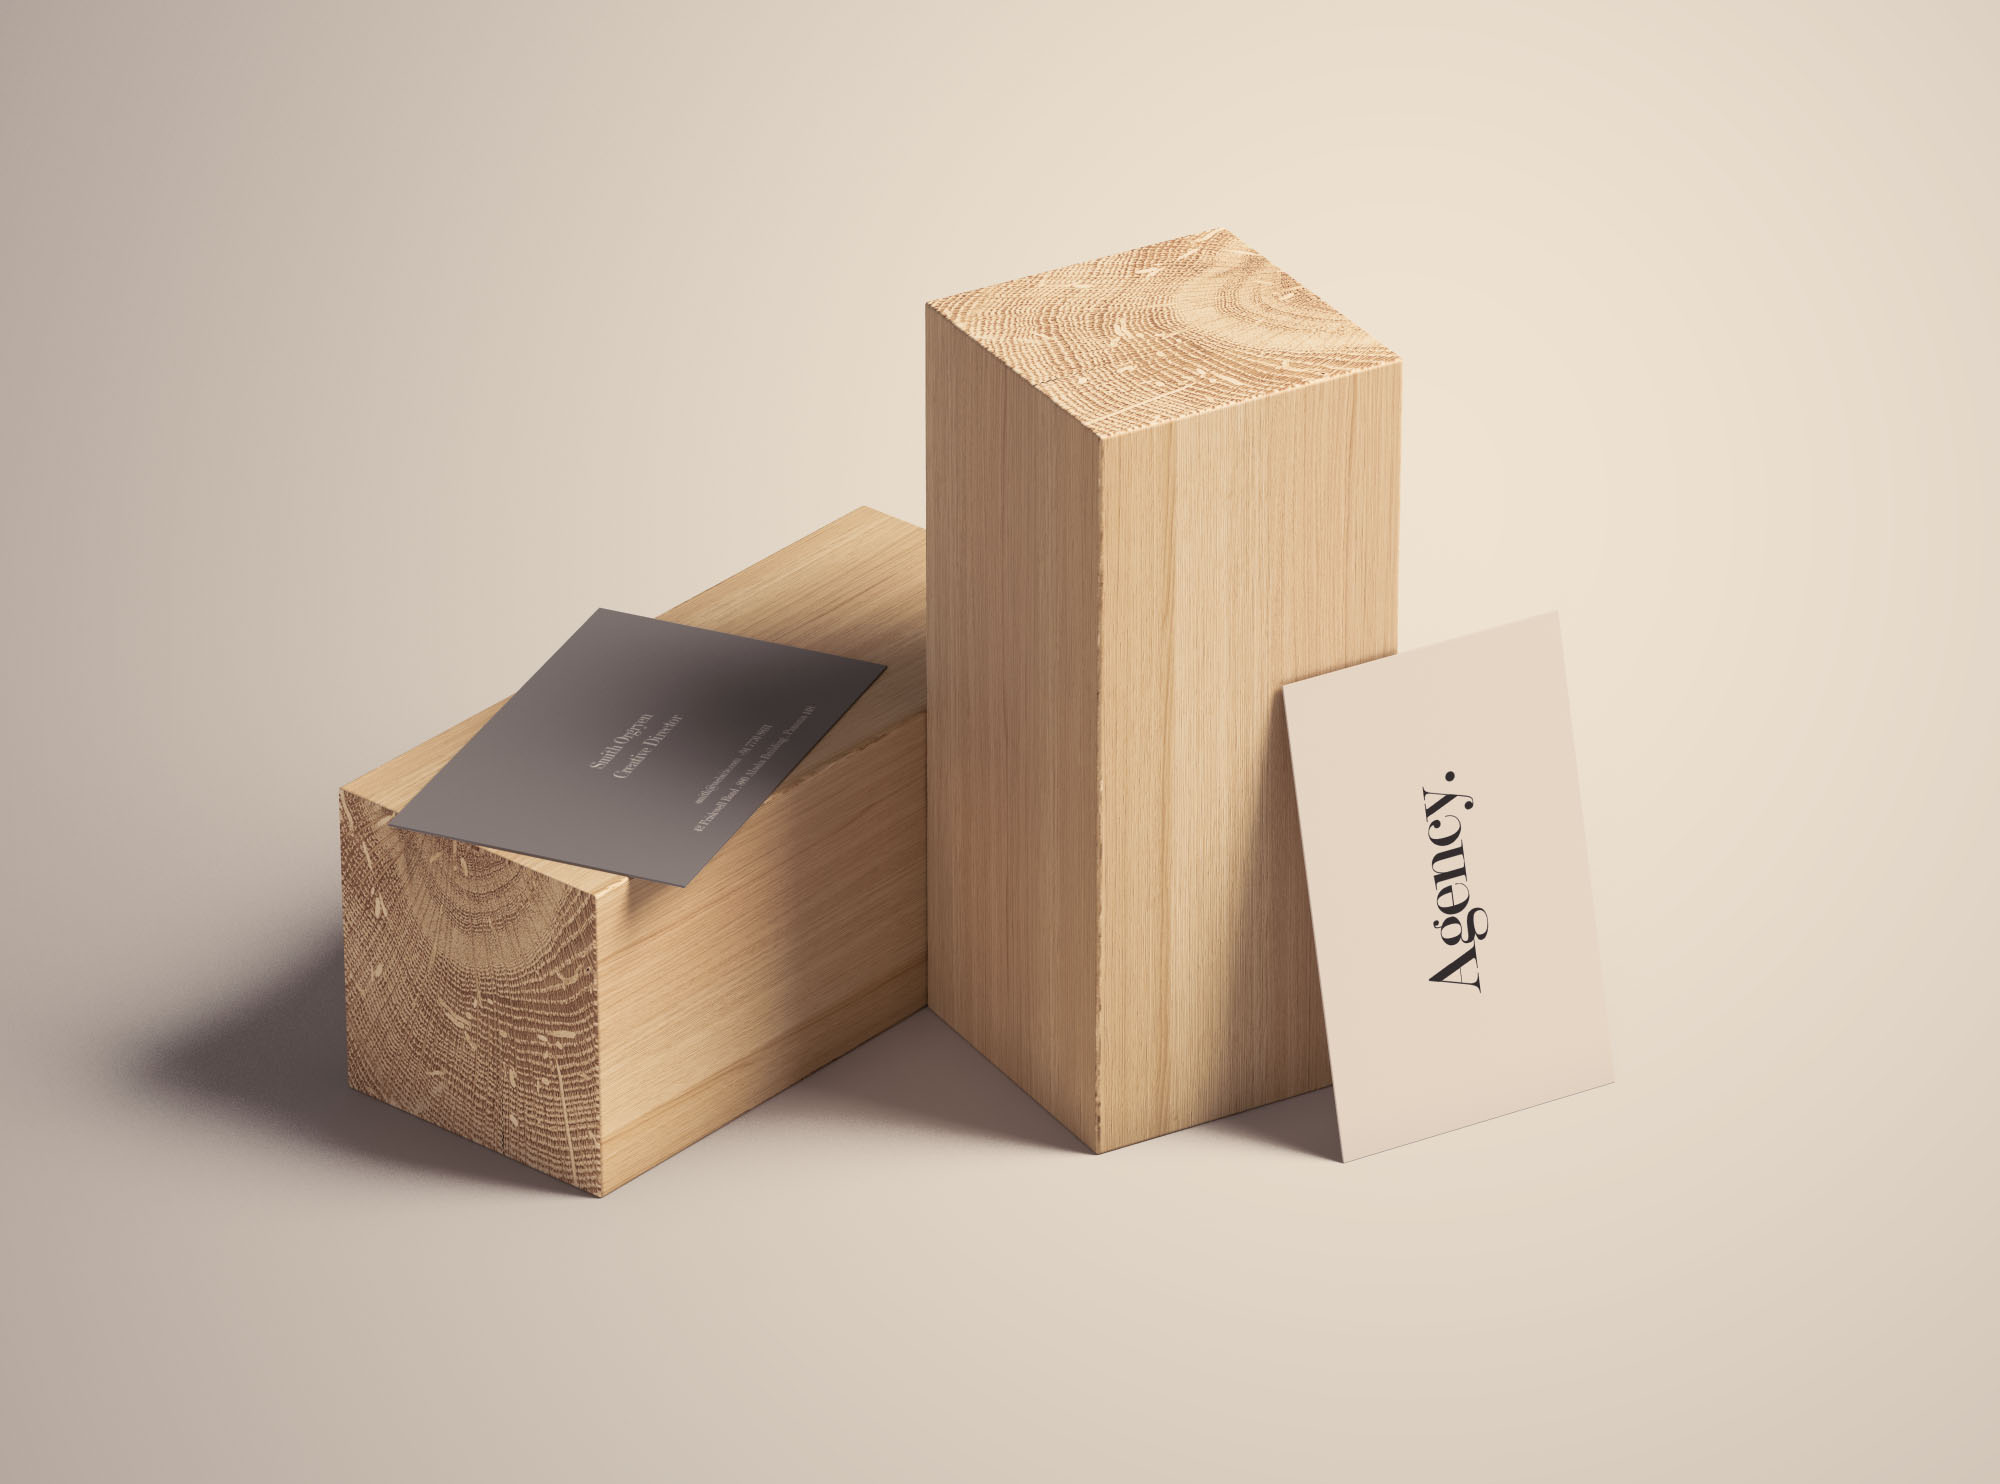 木块场景企业名片设计效果图样机 Business Card Mockup on Wood Blocks插图